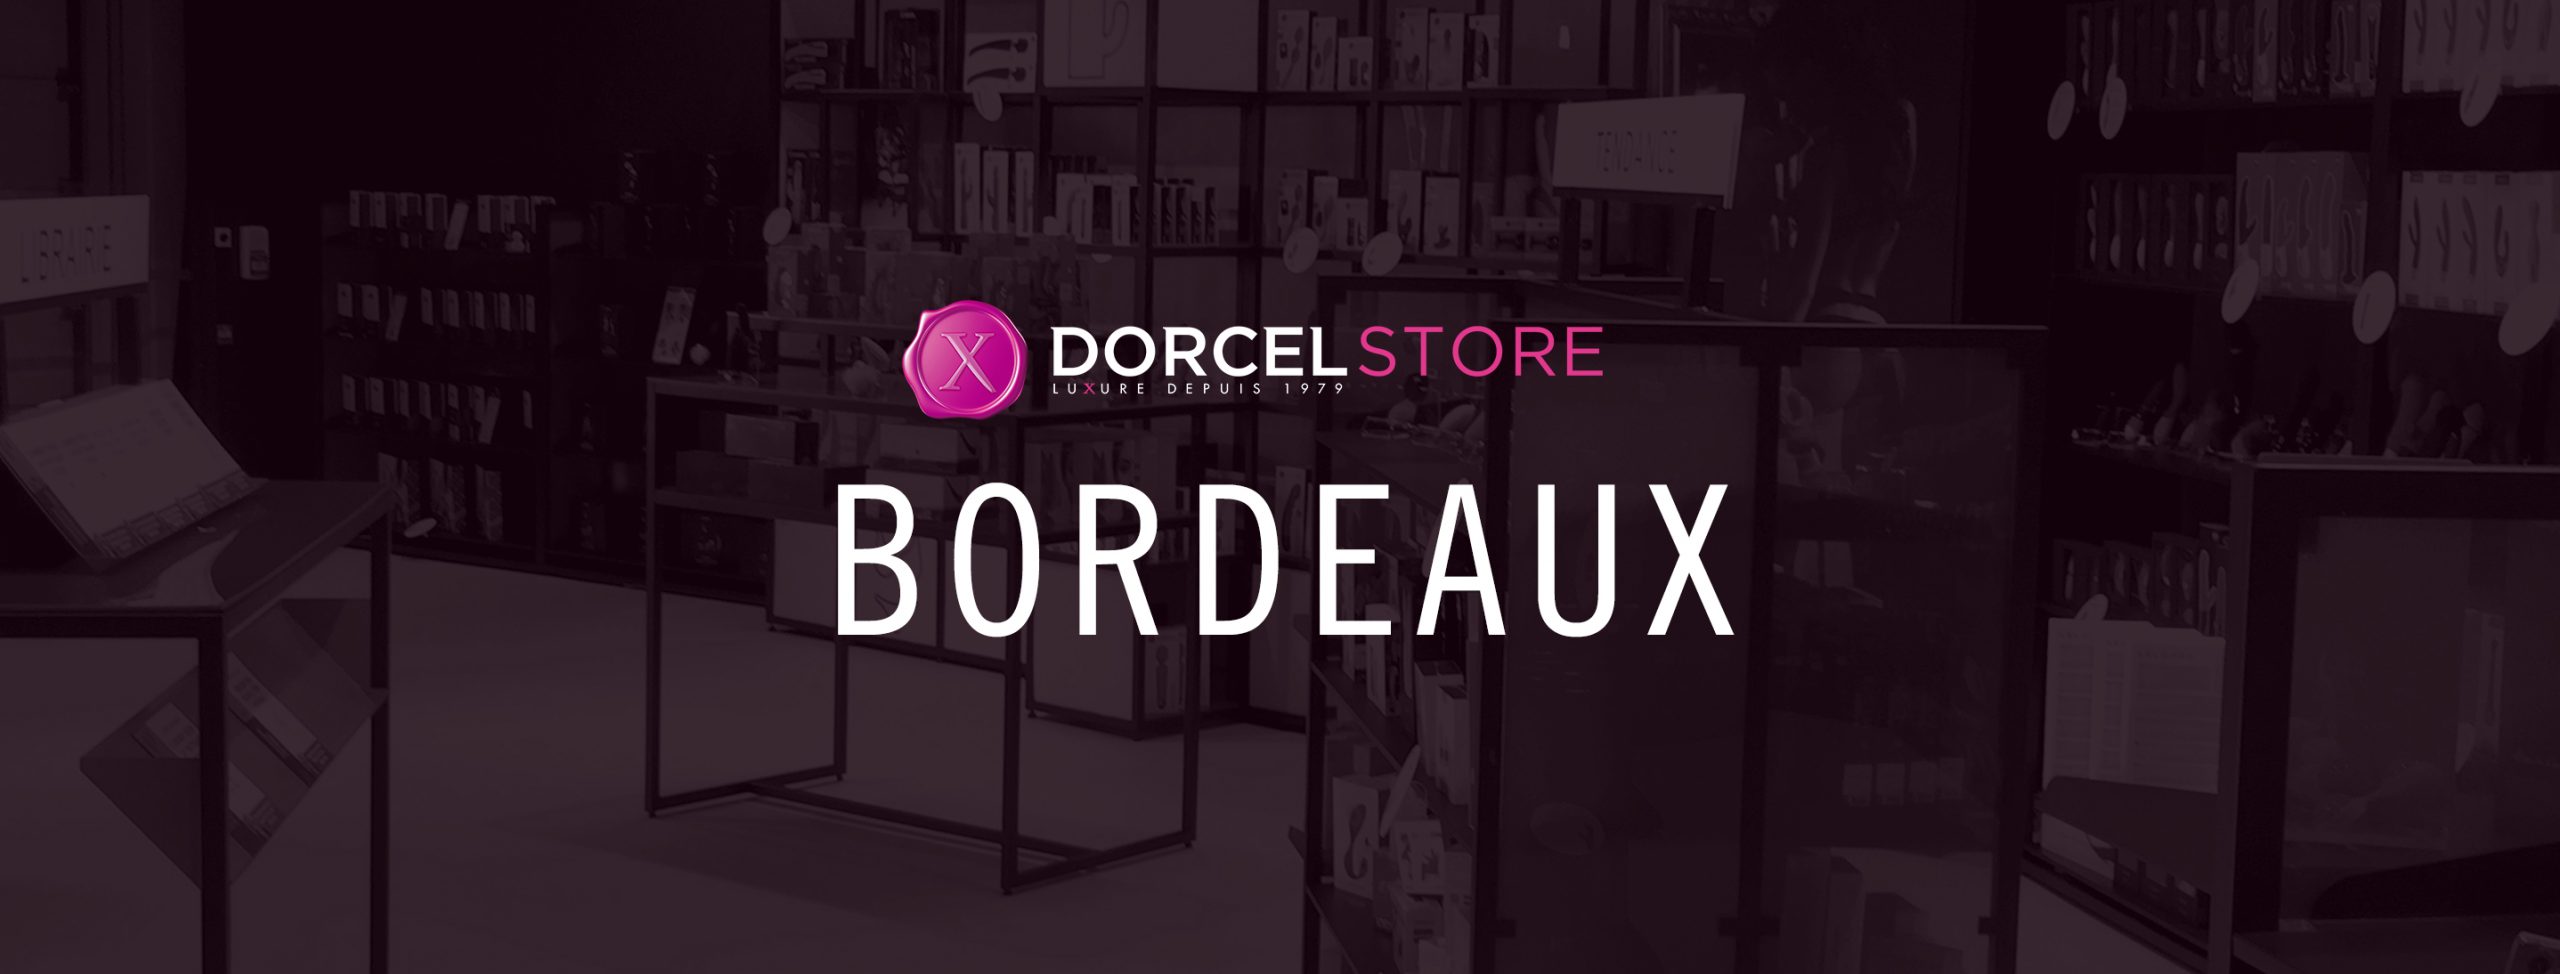 Dorcel store Bordeaux